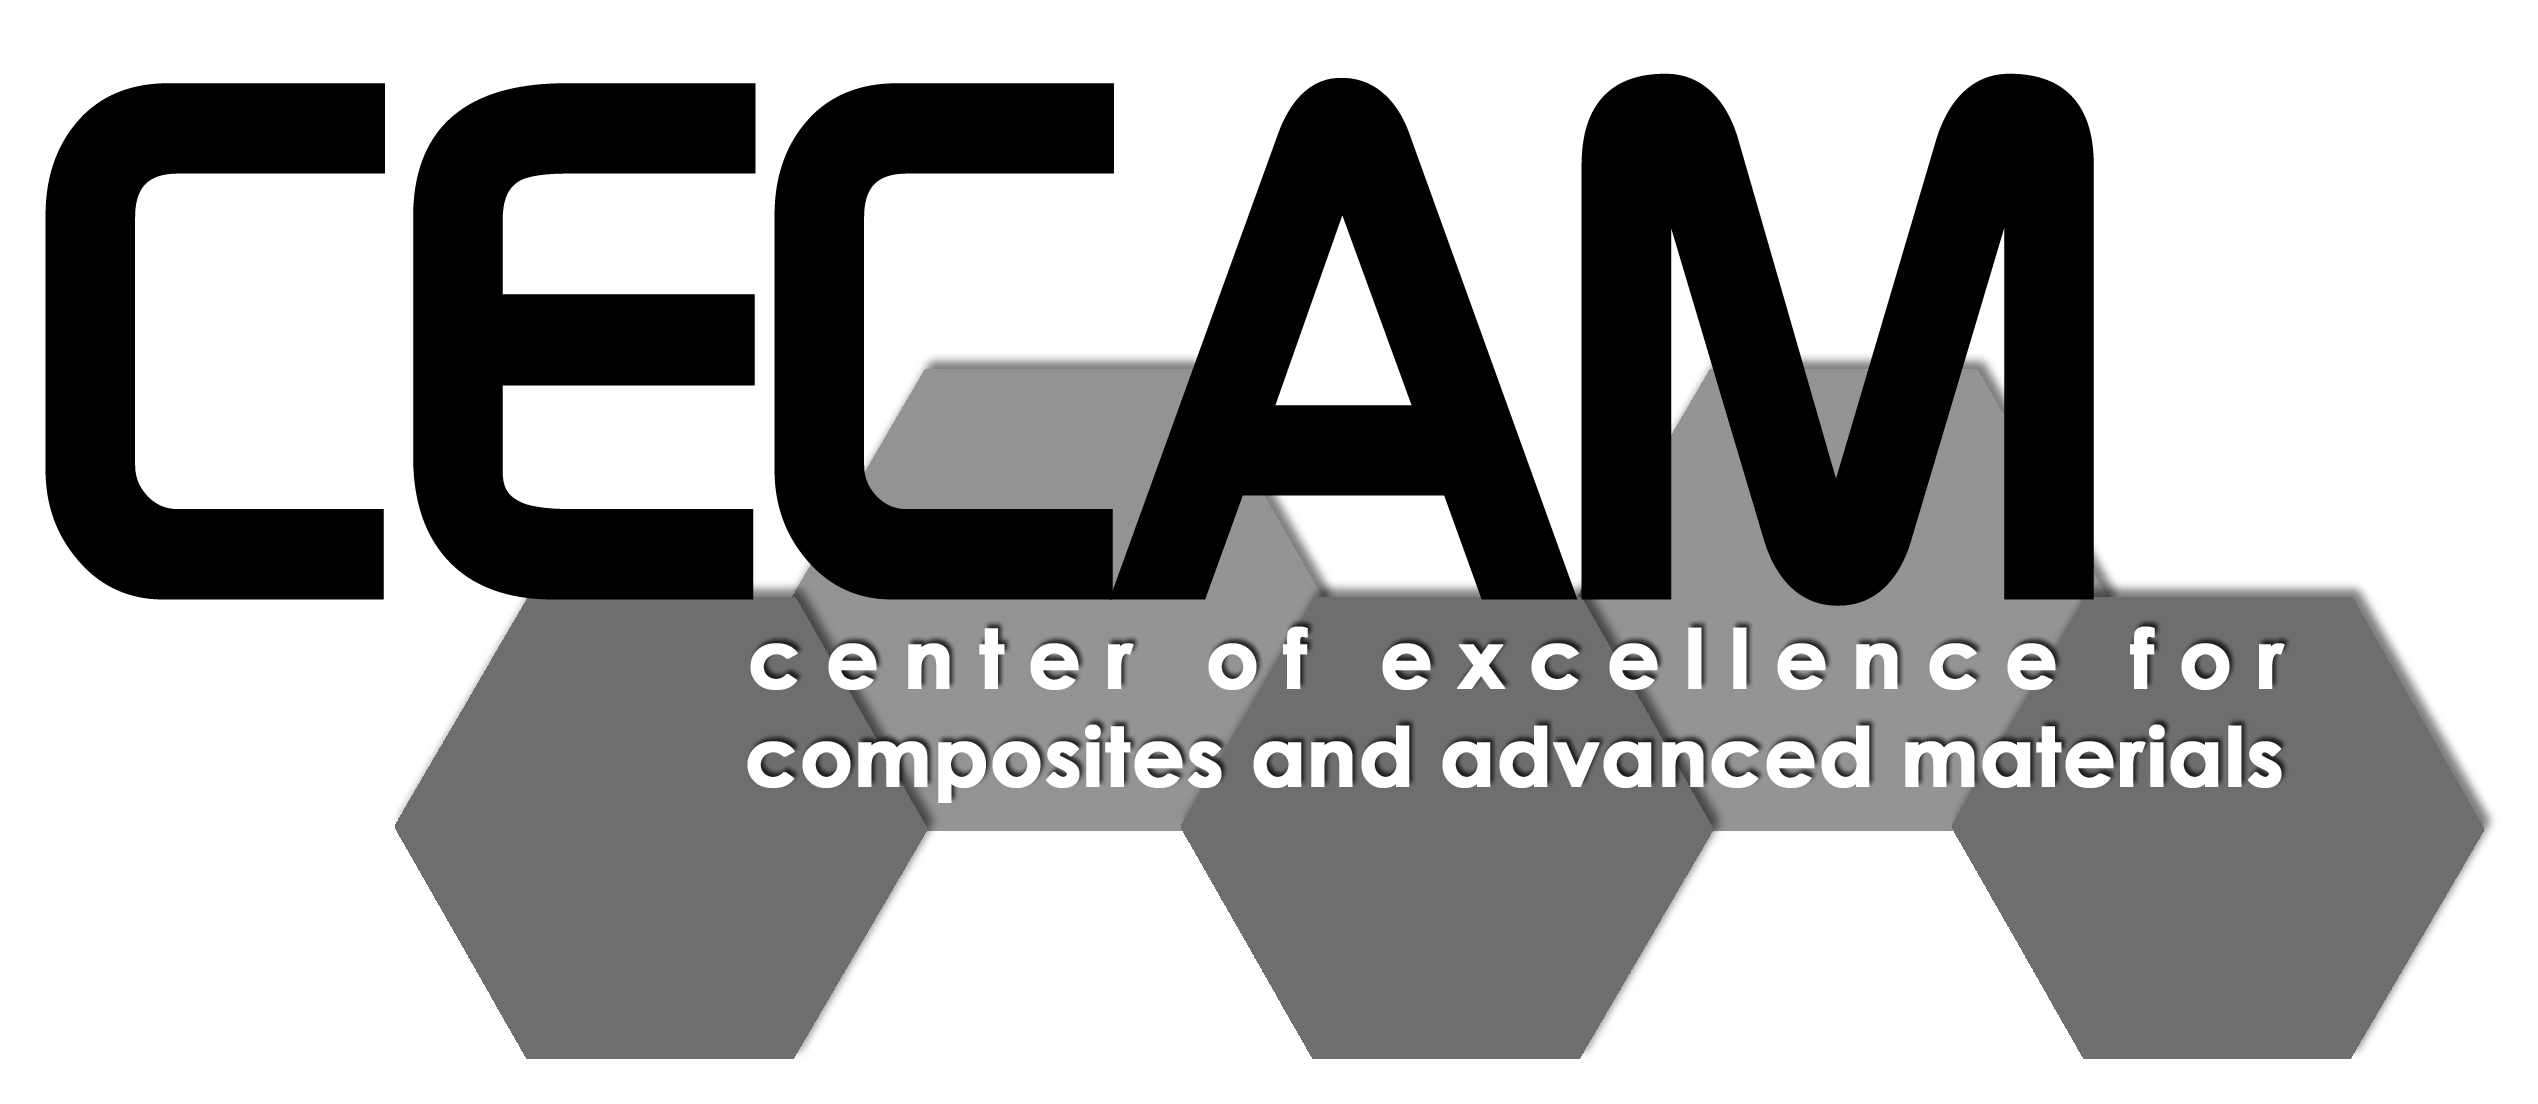 CECAM logo